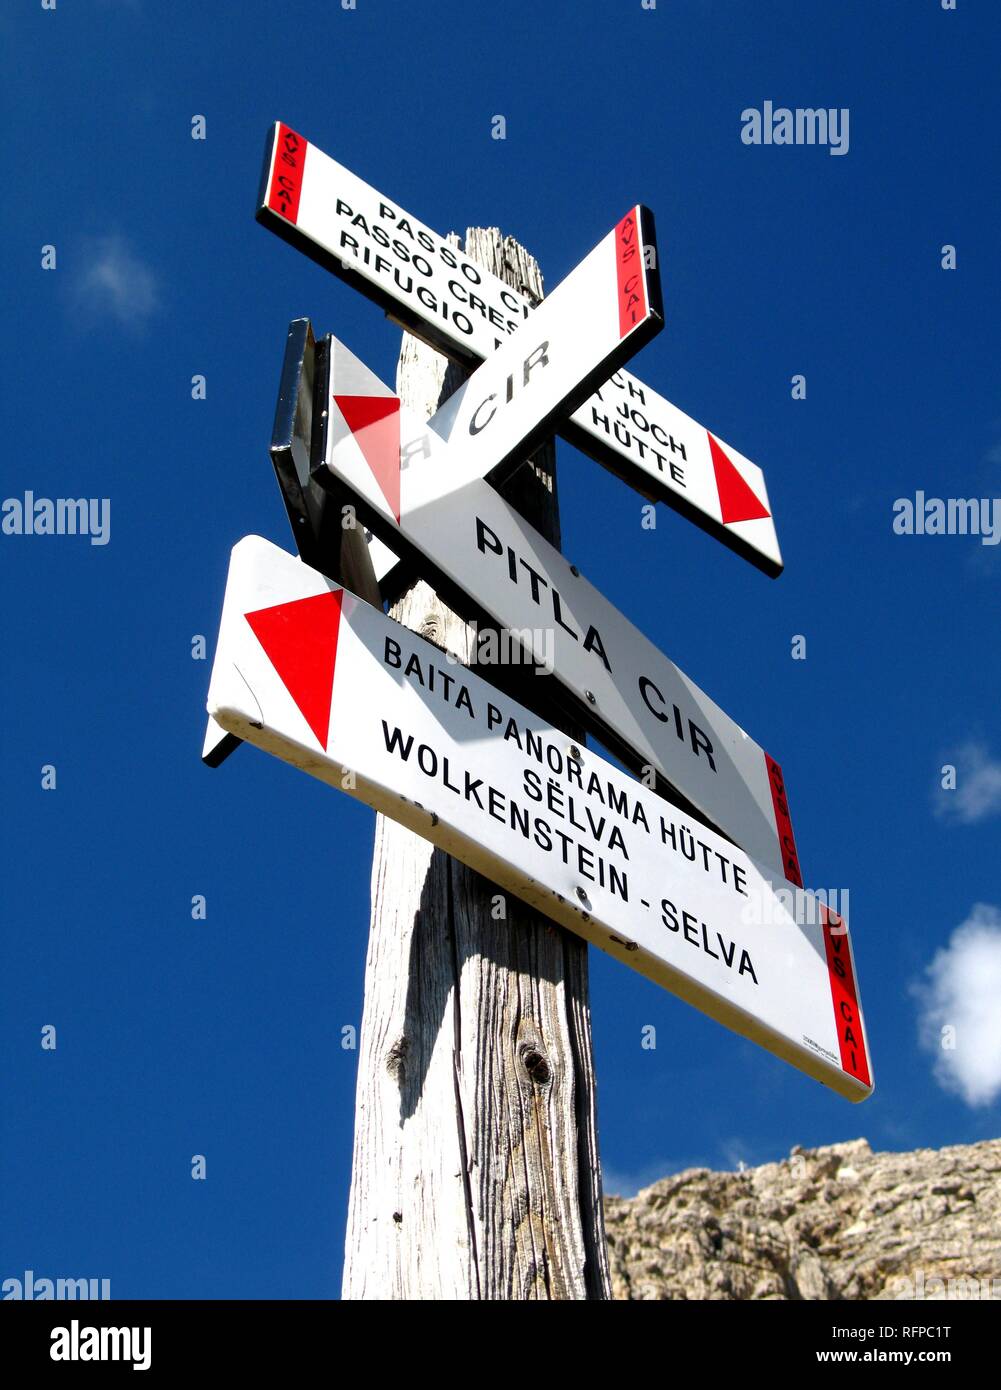 Cartel para el caminante visto en Tirol del Sur, Italia Foto de stock